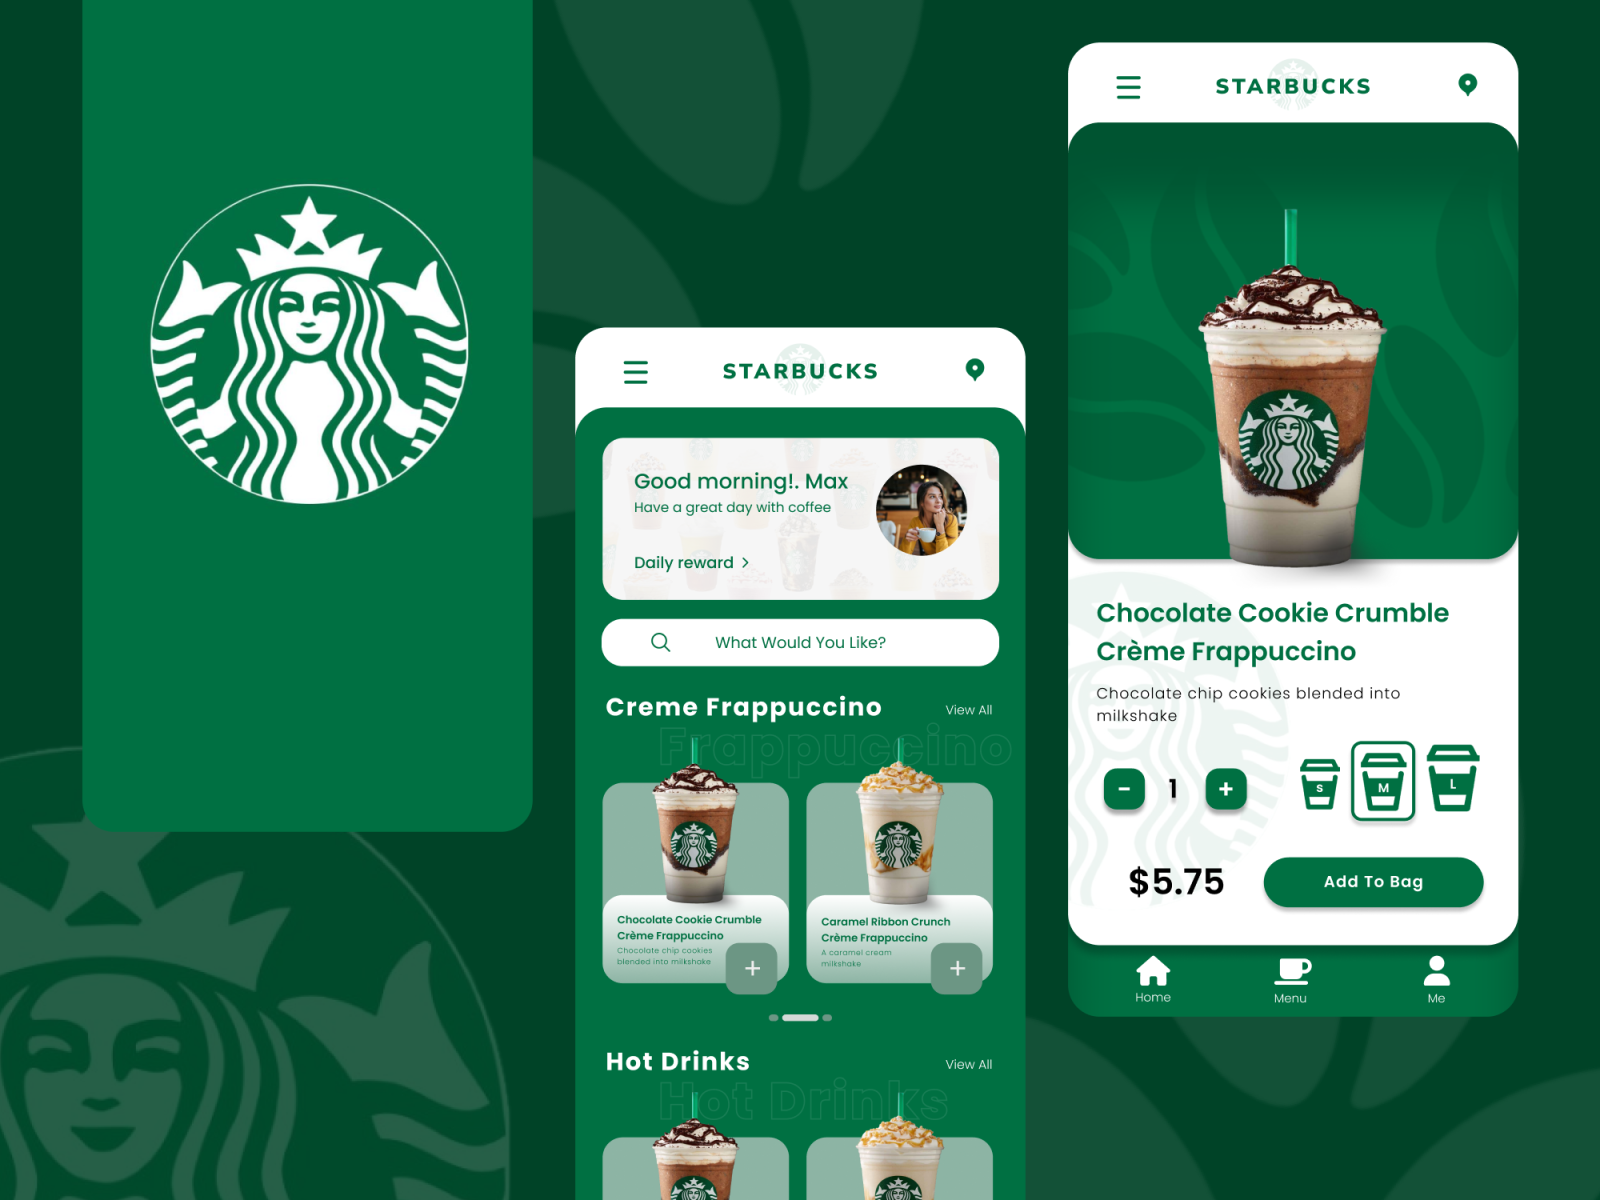 Starbucks Mobile App by Rupesh Max on Dribbble